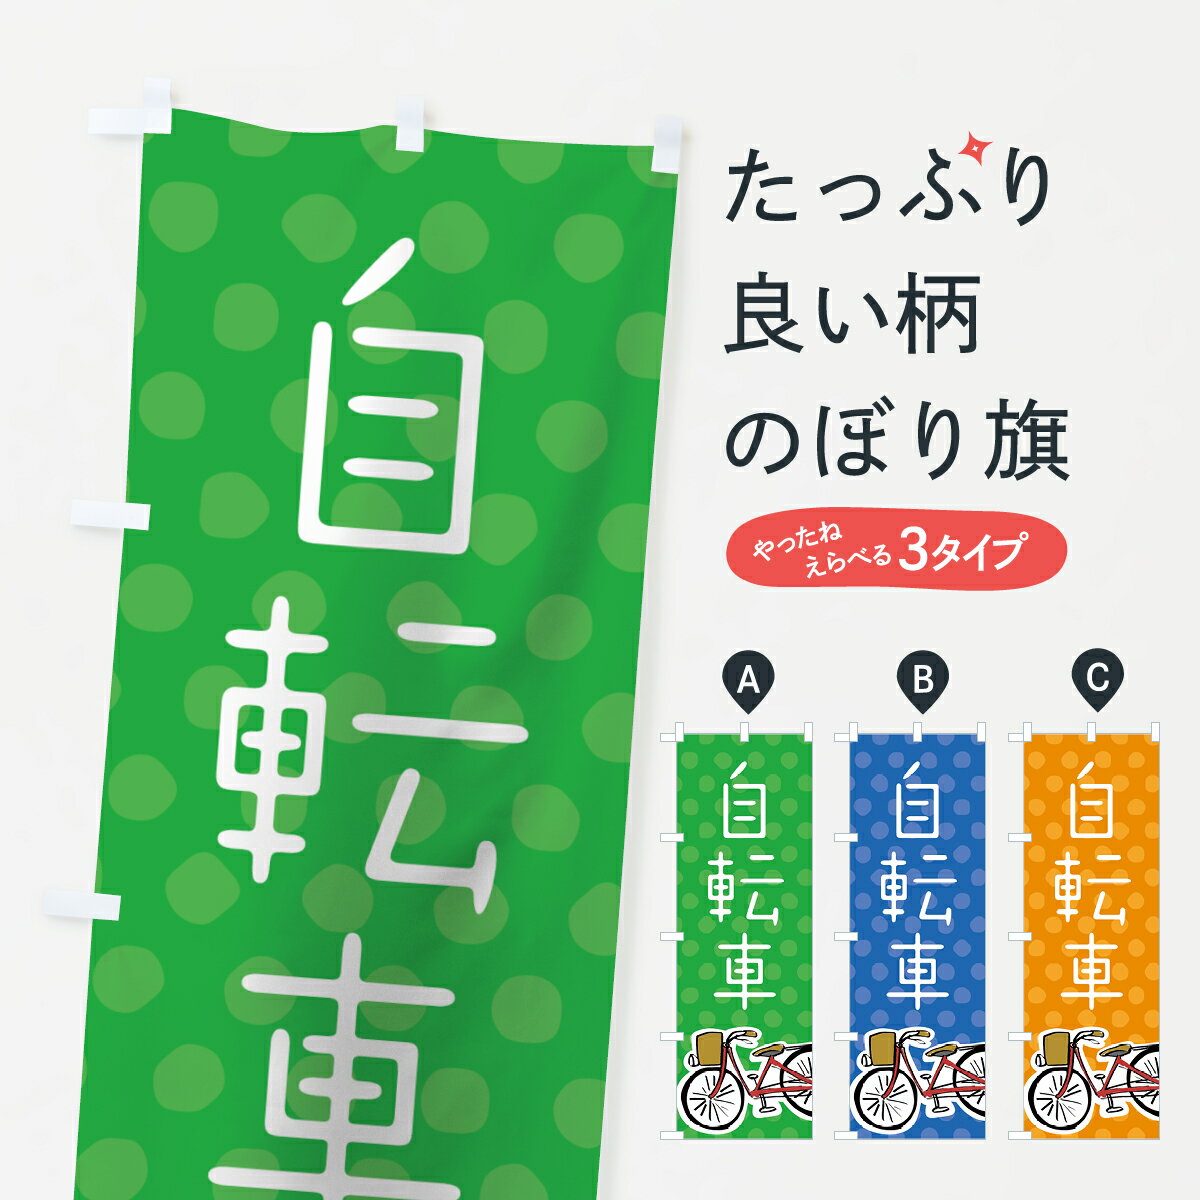 【3980送料無料】 のぼり旗 自転車のぼり サイクルショップ